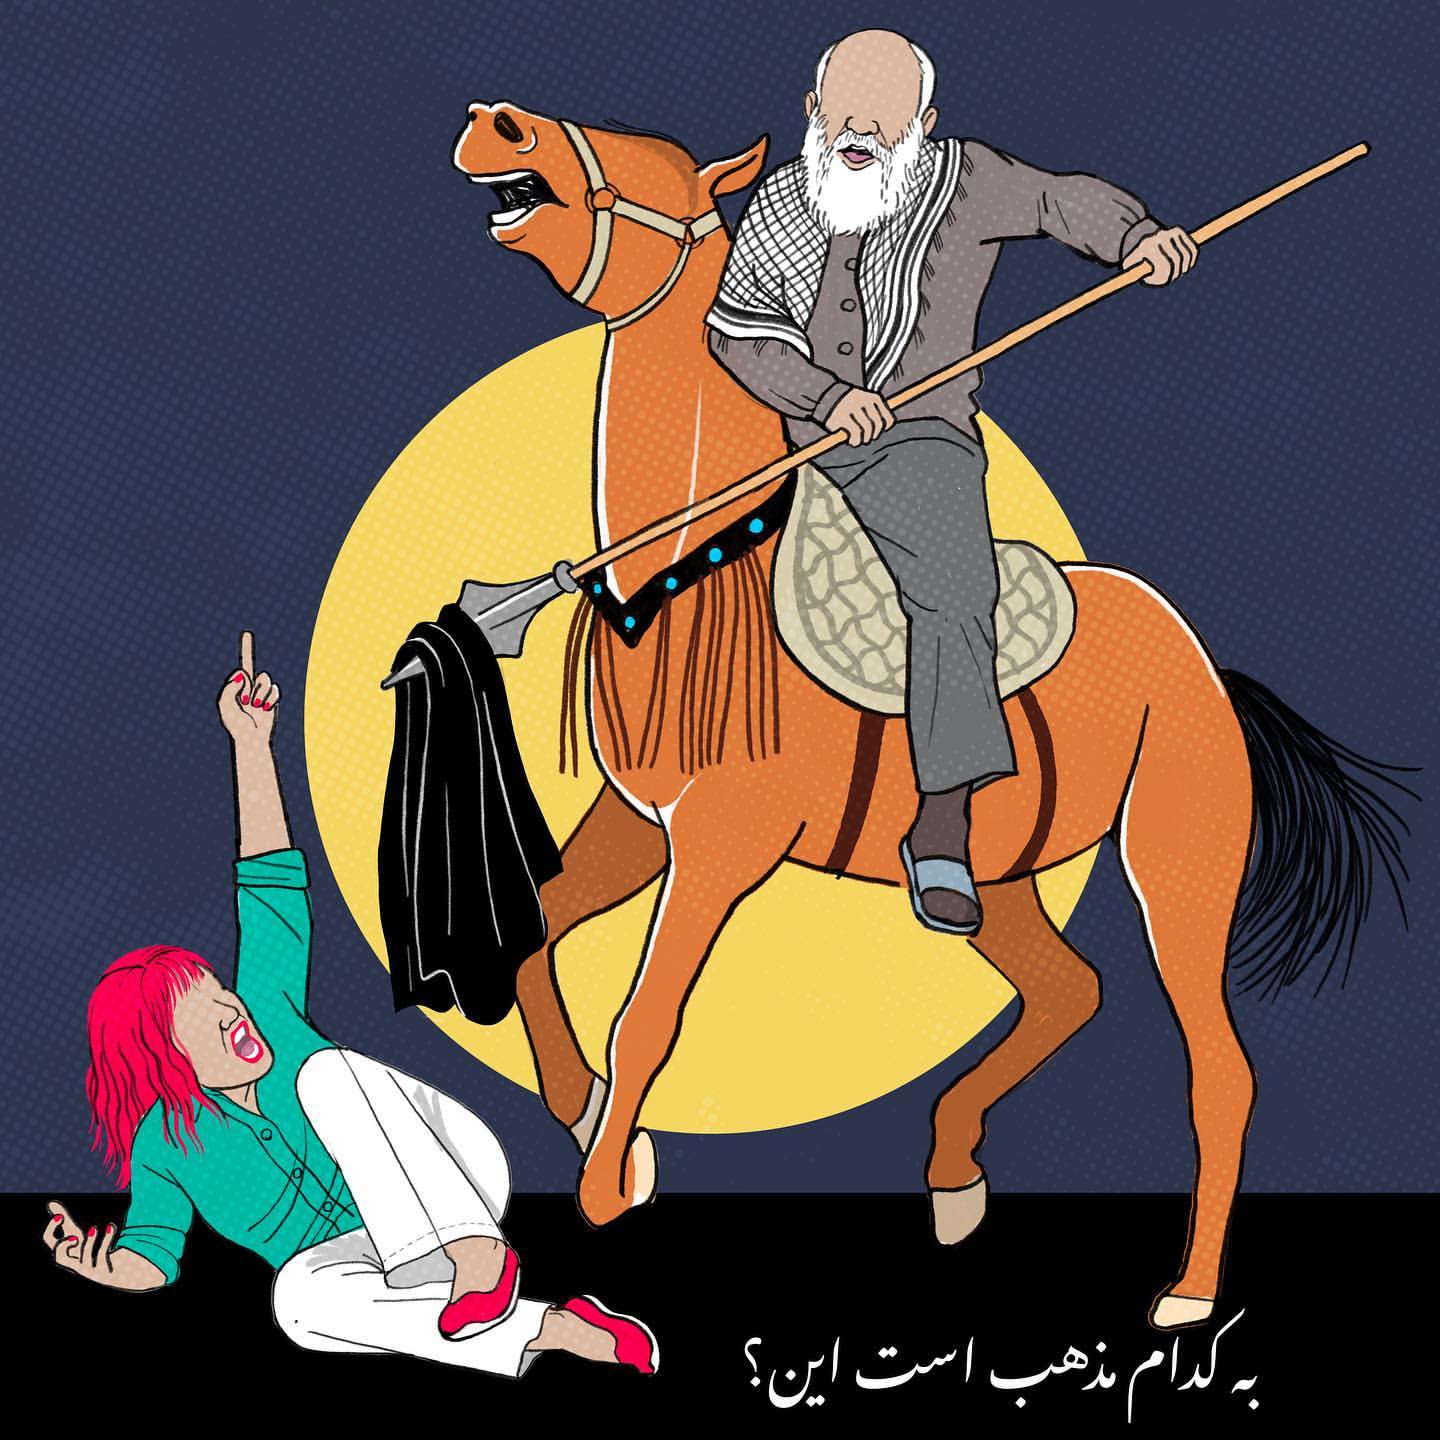 Iran Revolution Art No. 180320231679155334.